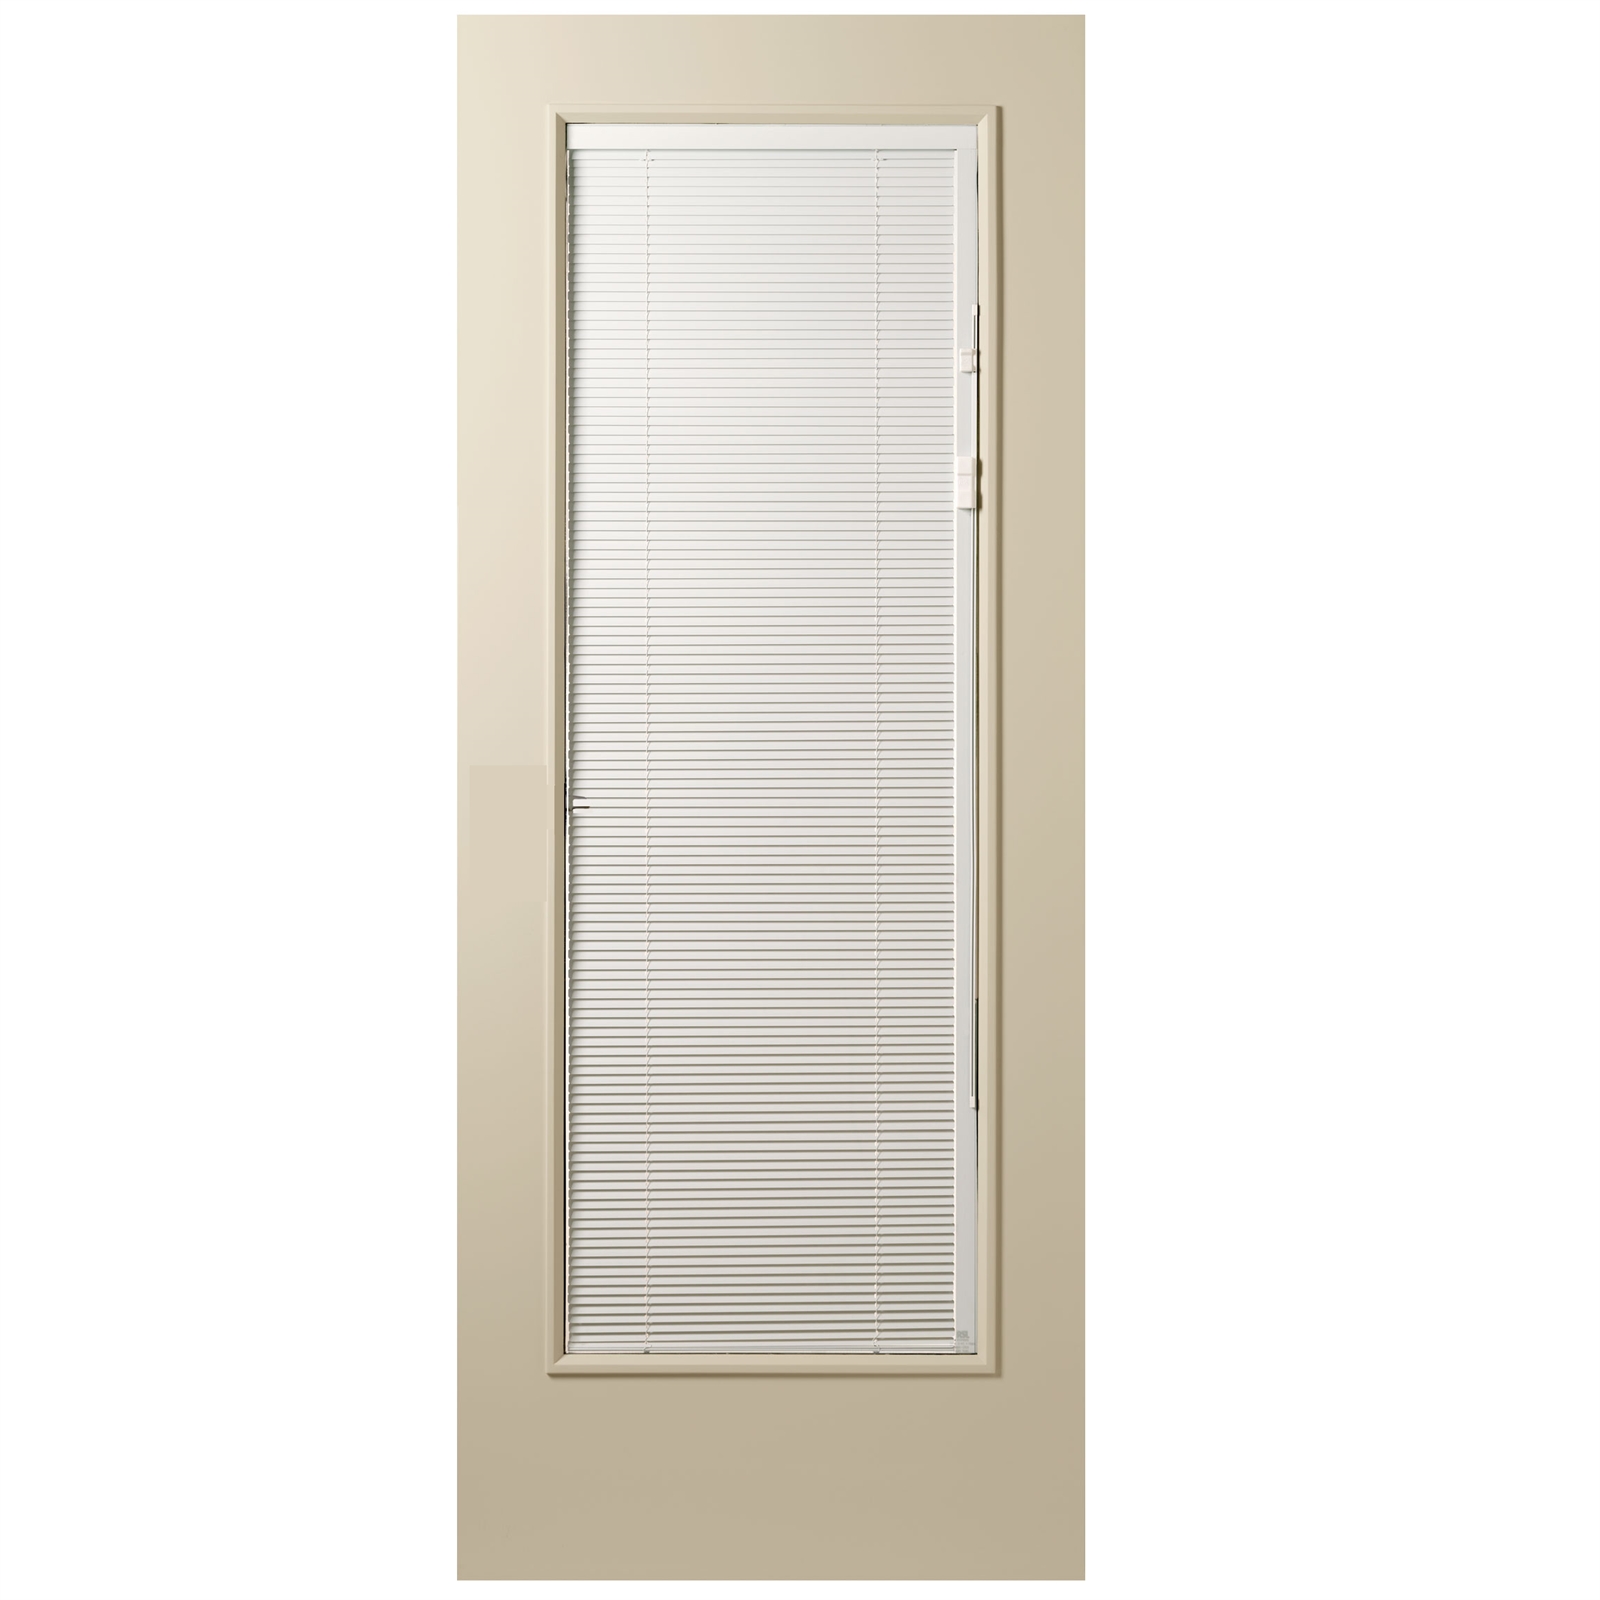 Corinthian Doors 2040 x 820 x 40mm Interblind Entrance Door